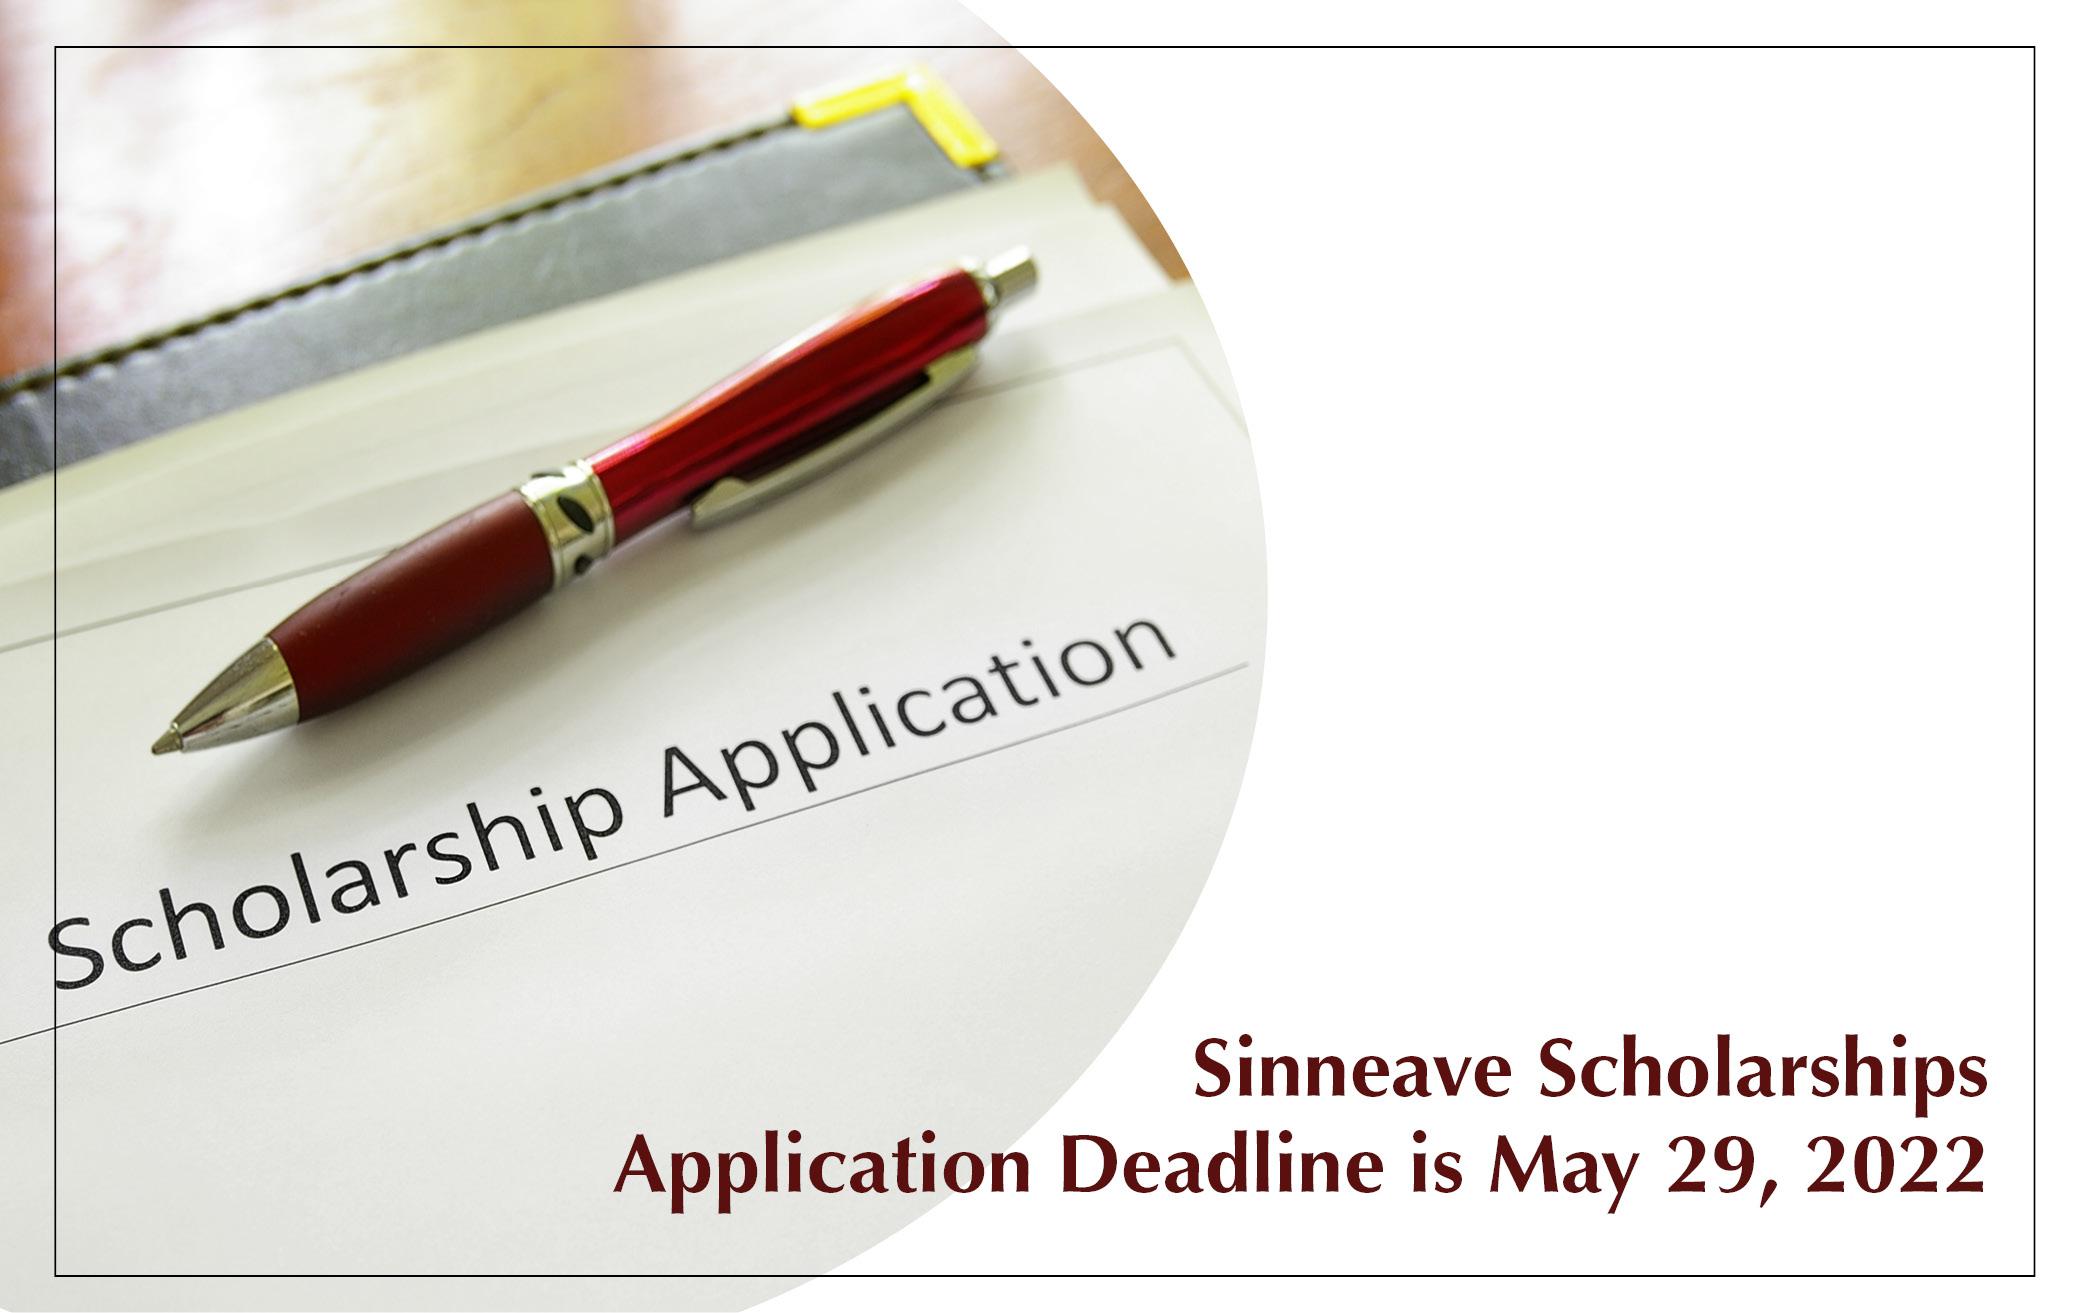 Sinneave Scholarships